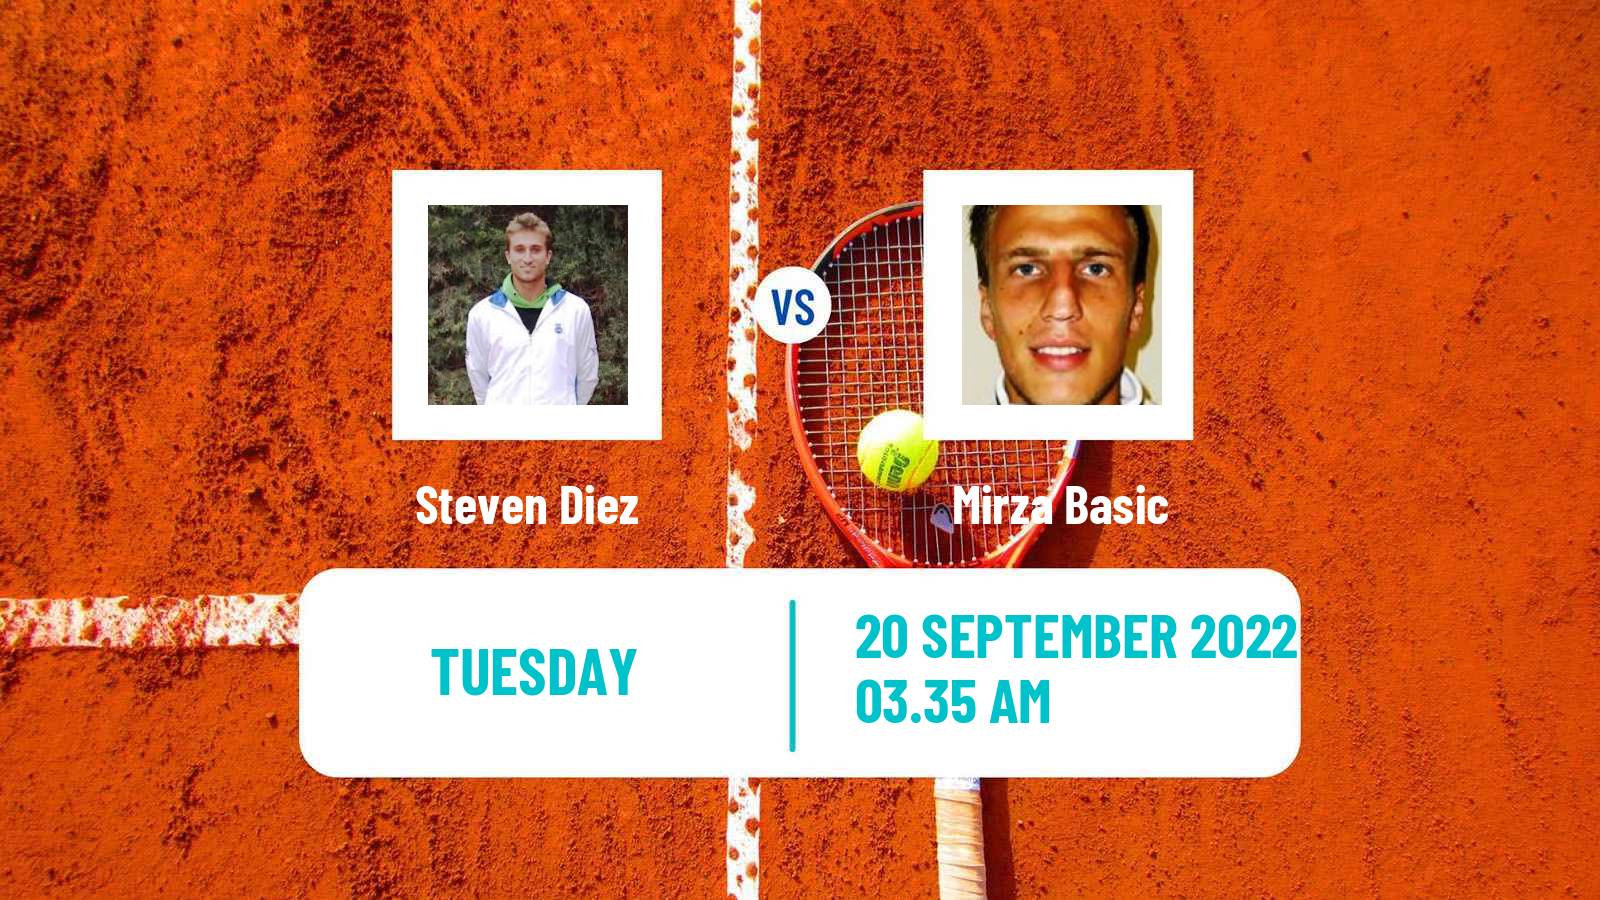 Tennis ATP Challenger Steven Diez - Mirza Basic